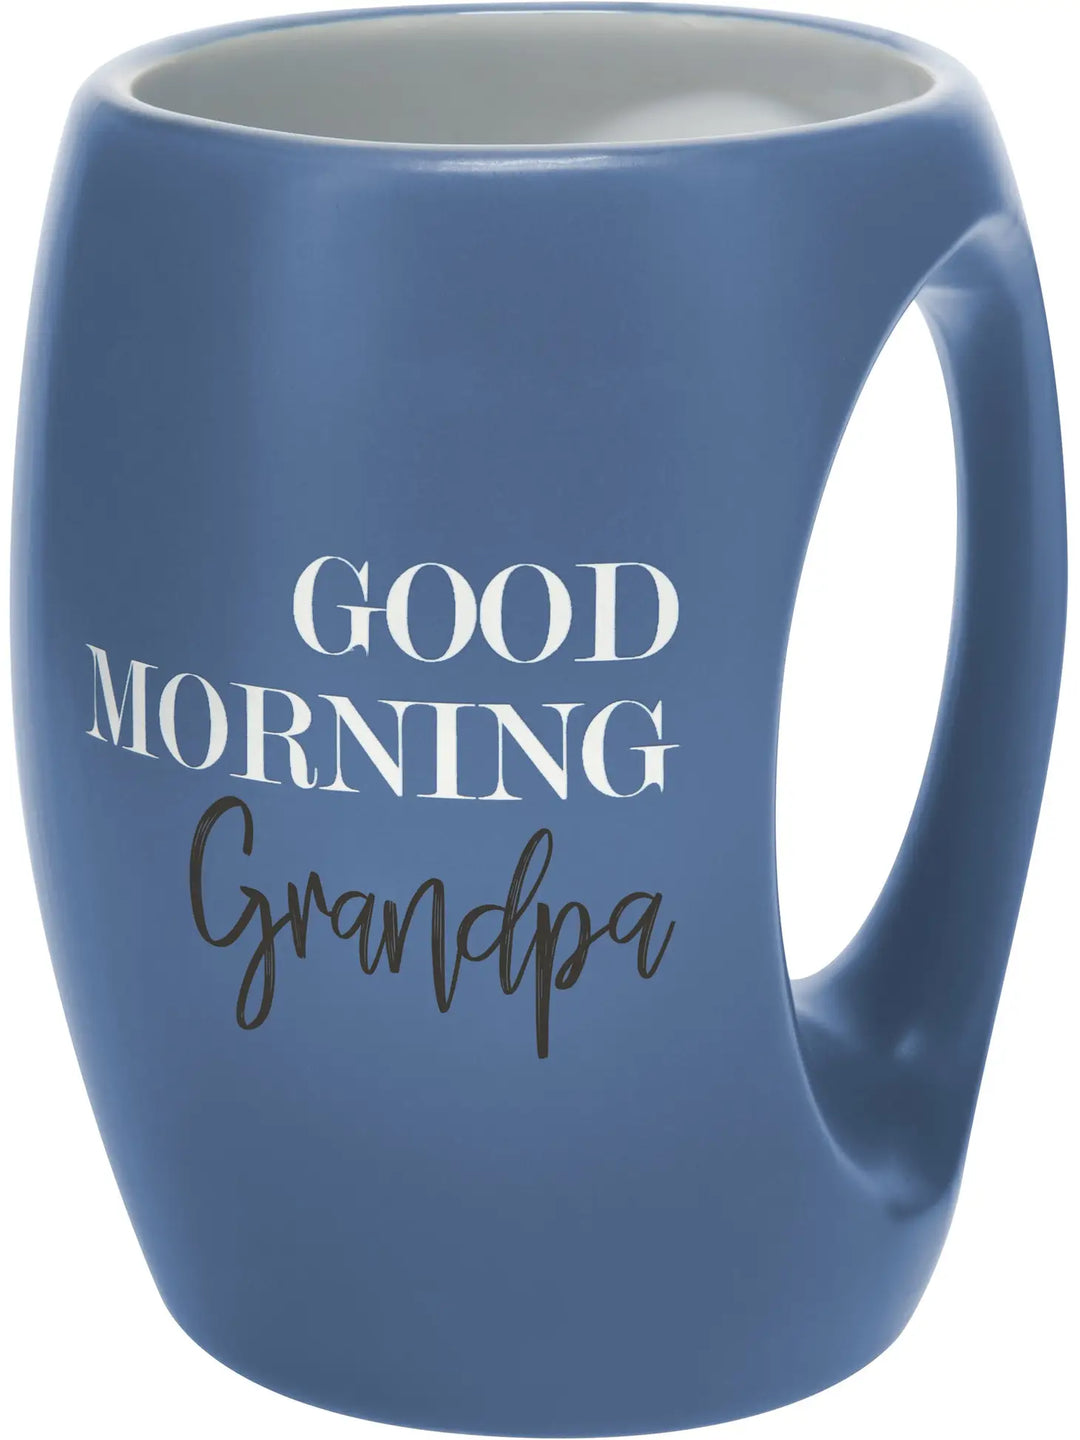 16 oz Grandpa Mug